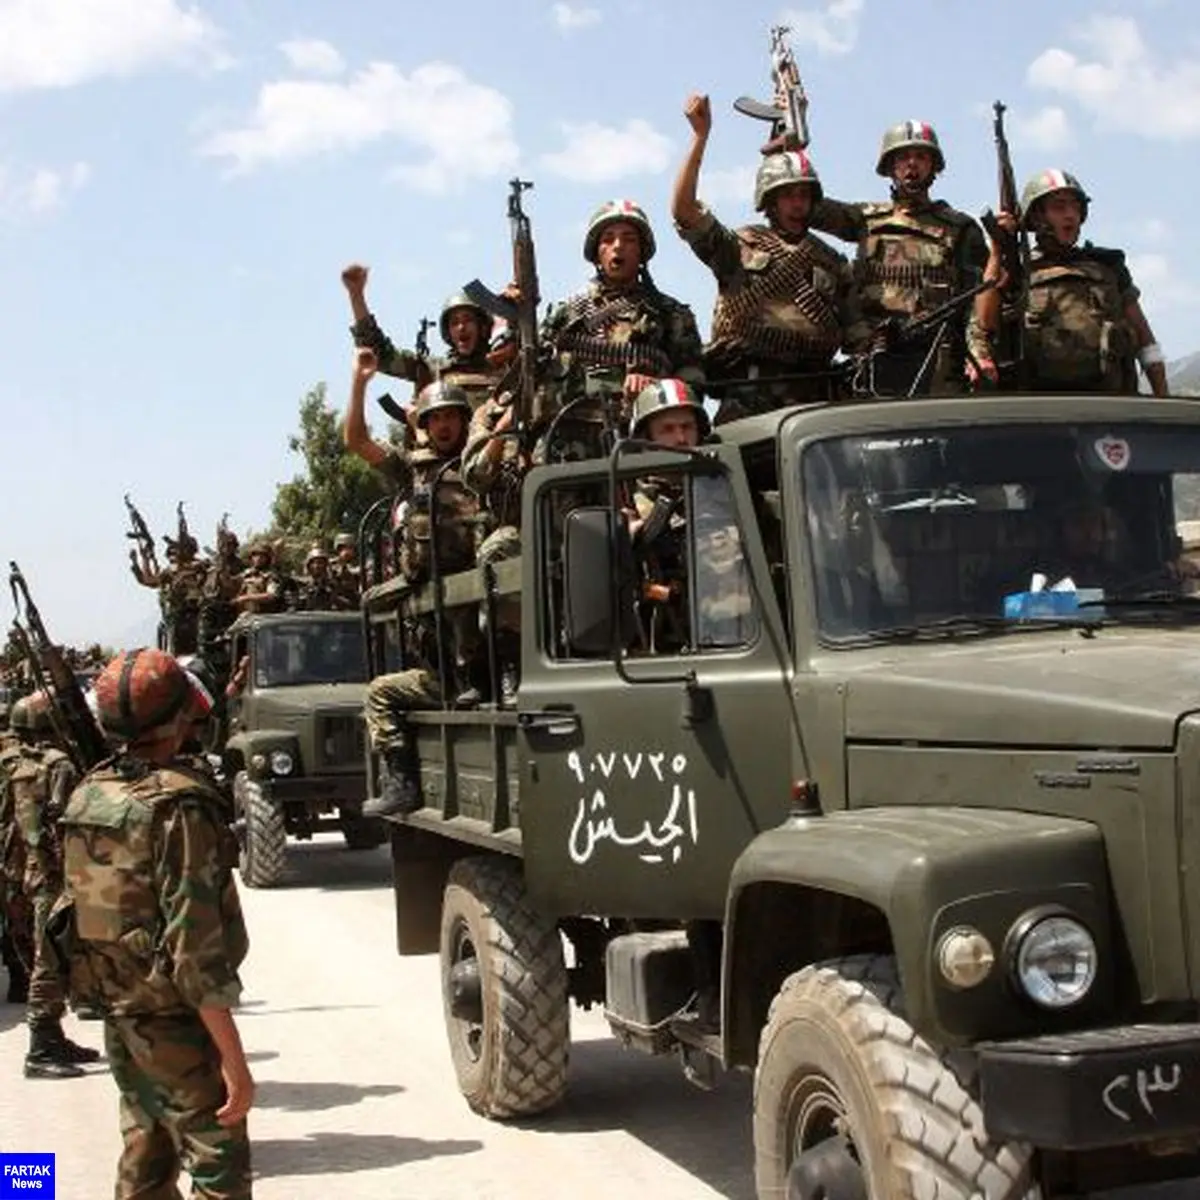  المیادین: ارتش سوریه با کردها برای ورود به عفرین به توافق رسید